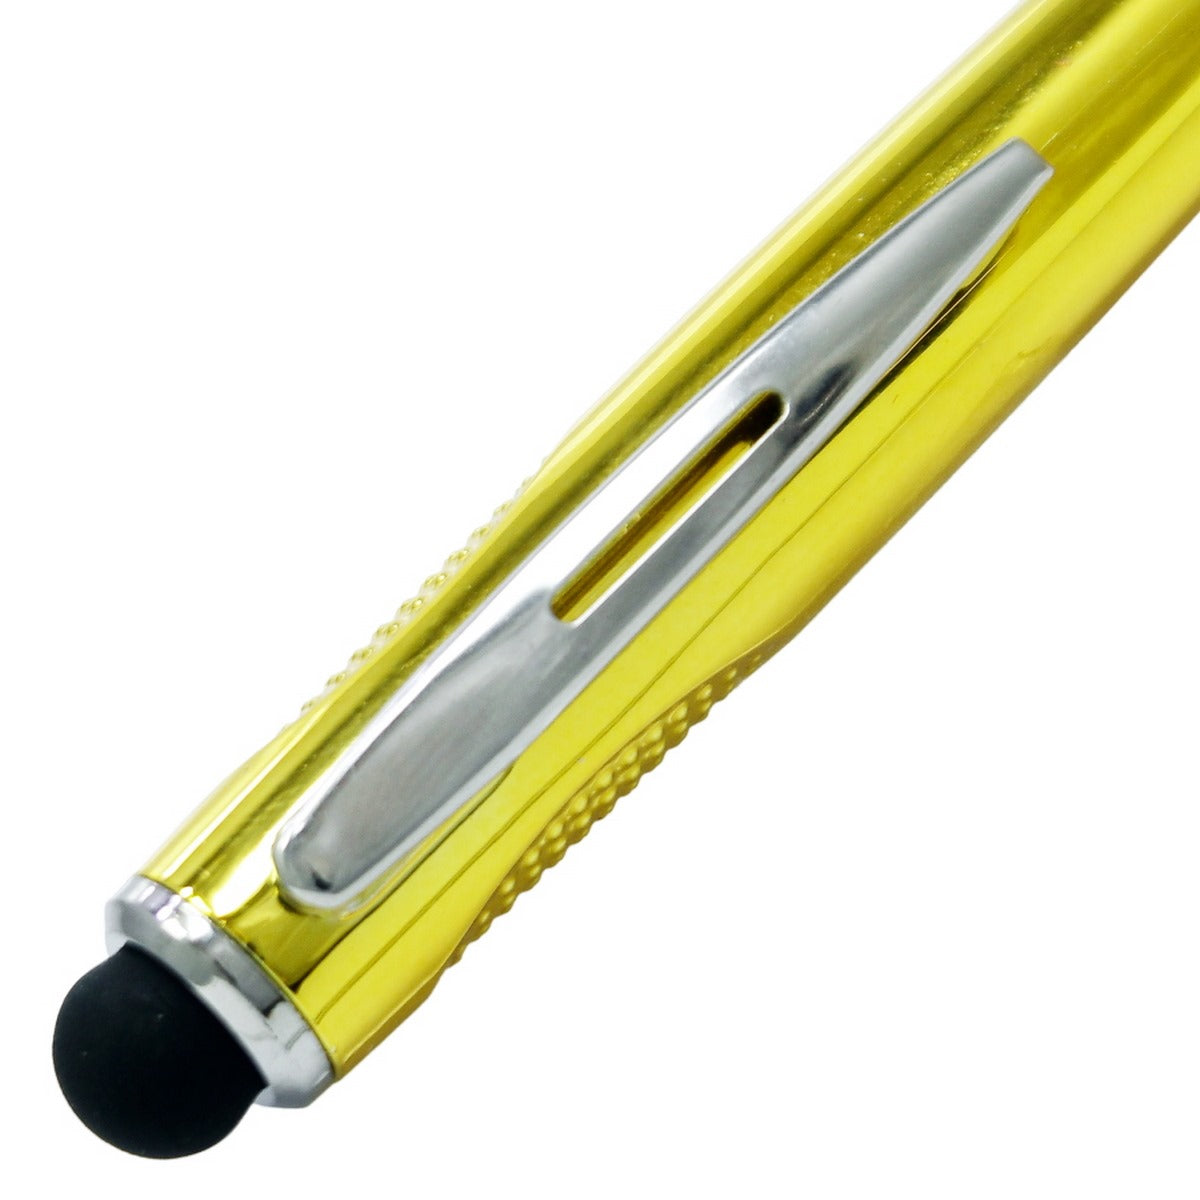 jags-mumbai Highlighters Ball Pen Brand Highlighter Pen Golden